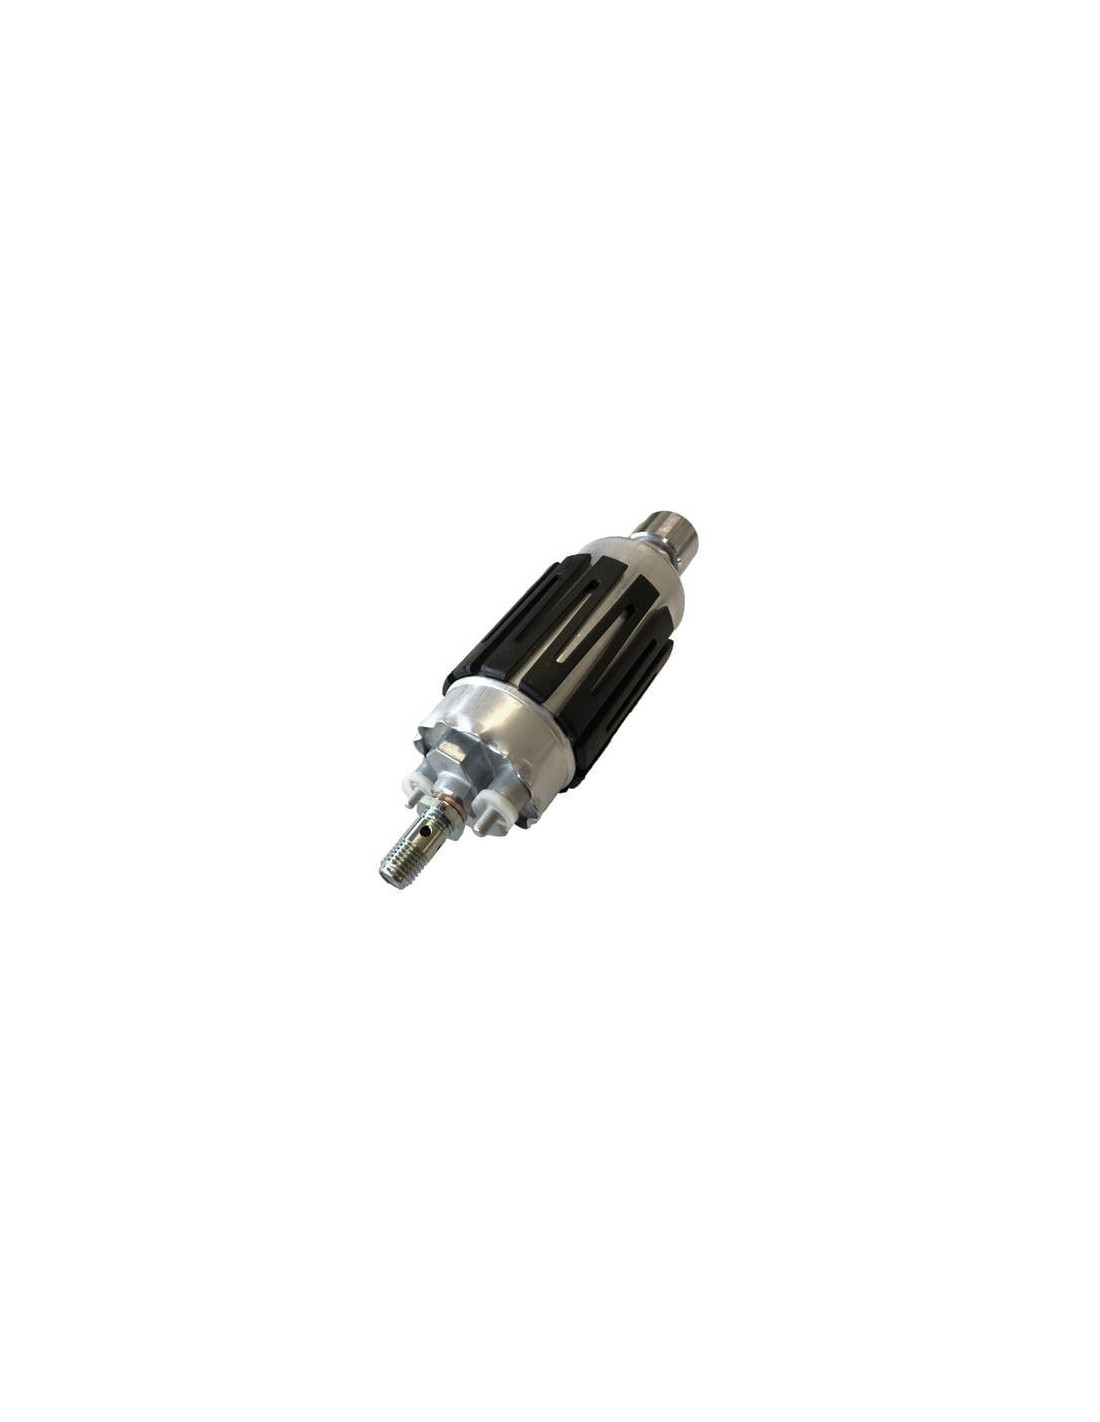 External Inline Fuel Pump Replacing For Bosch 044 0580254044